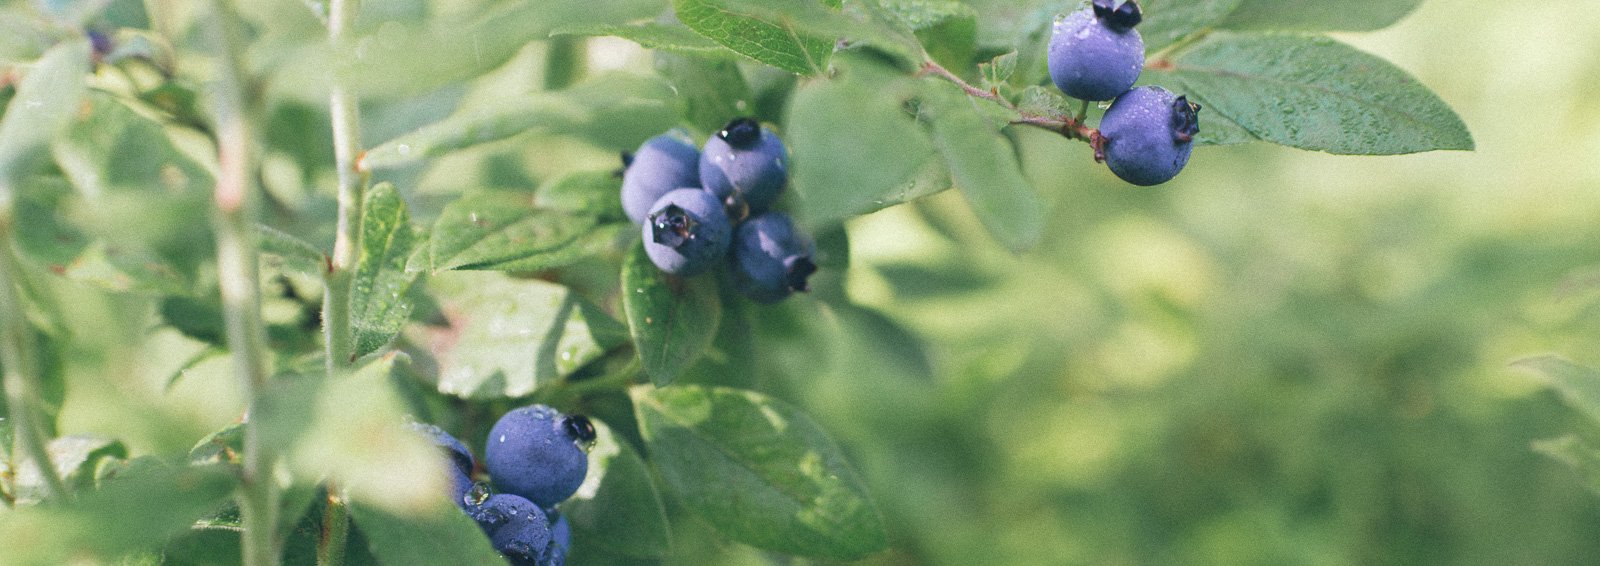 Blueberries-Suzanne-Hughdie